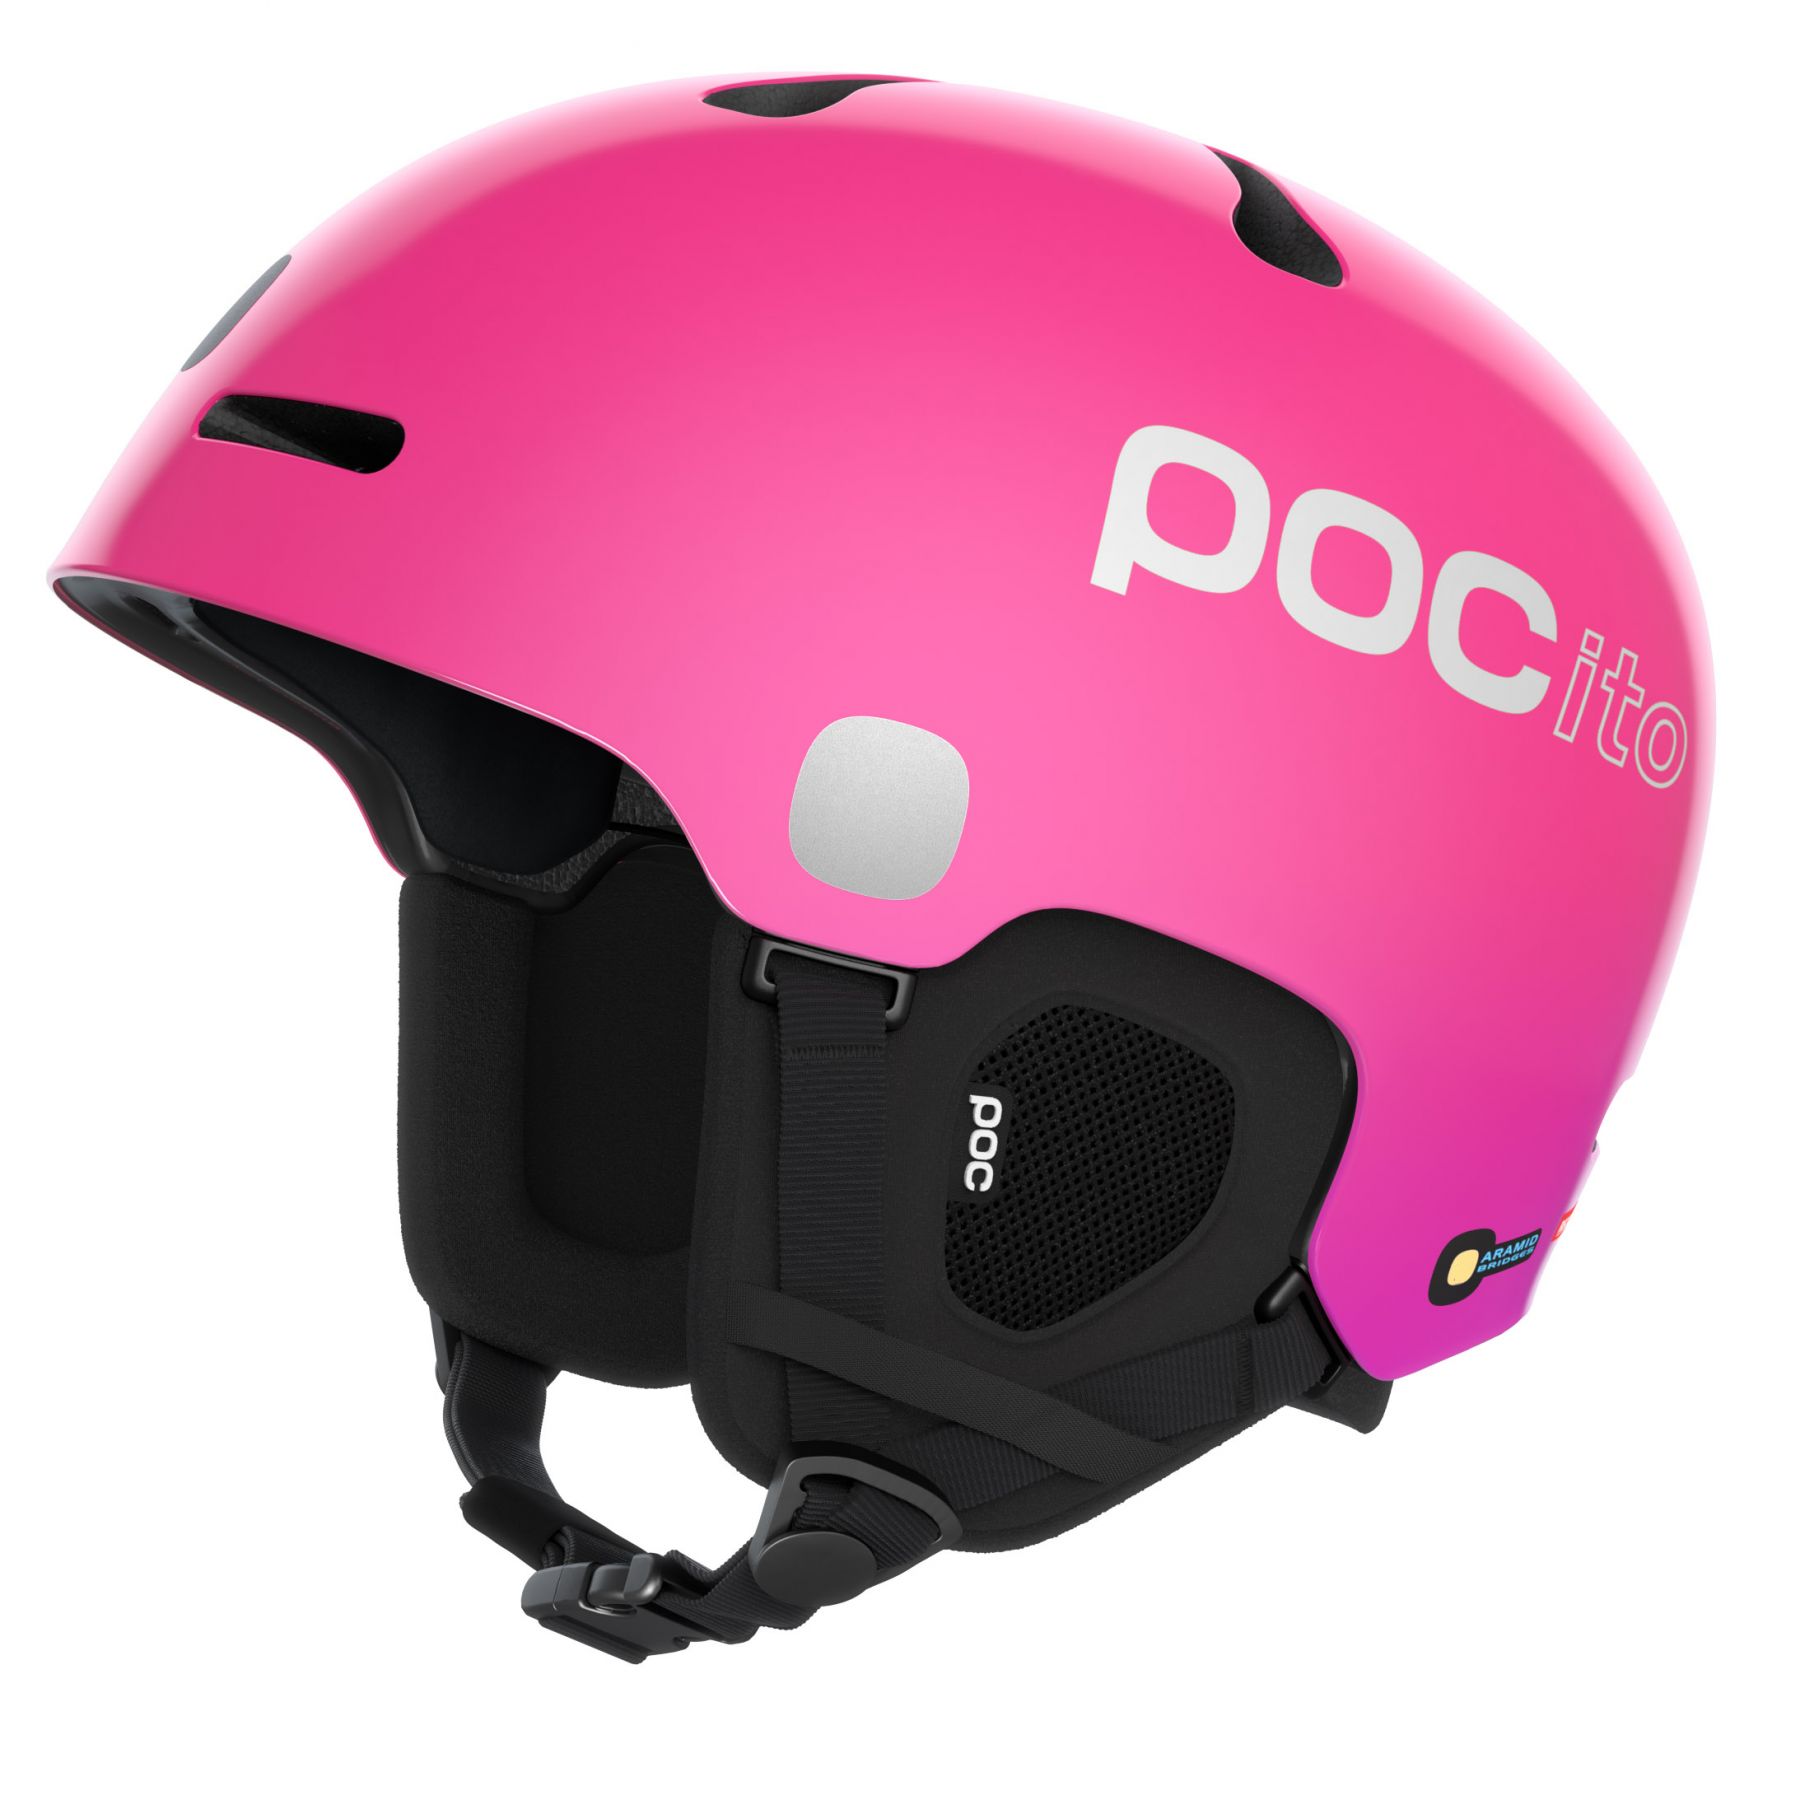 Billede af POCito Fornix MIPS, skihjelm, junior, flourescent pink hos Skisport.dk